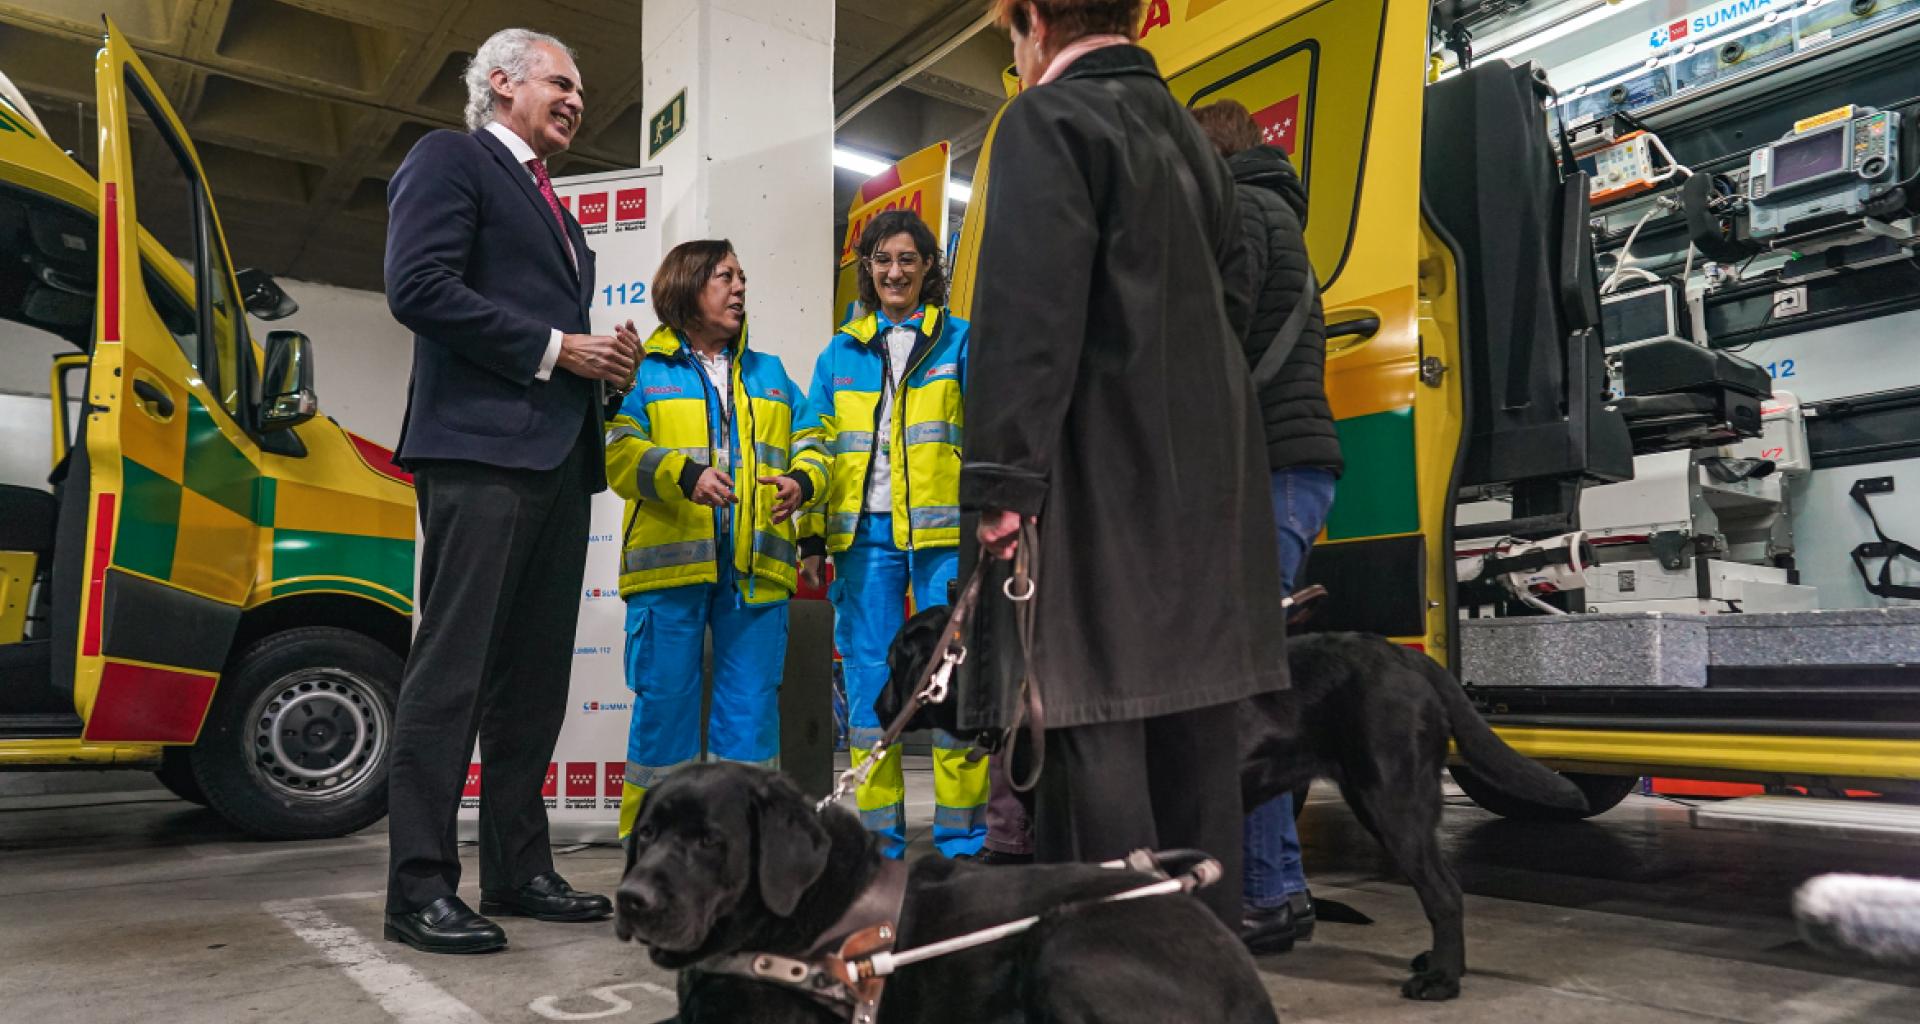 Acompañamiento de perros de asistencia en los traslados de ambulancia del SUMMA 112